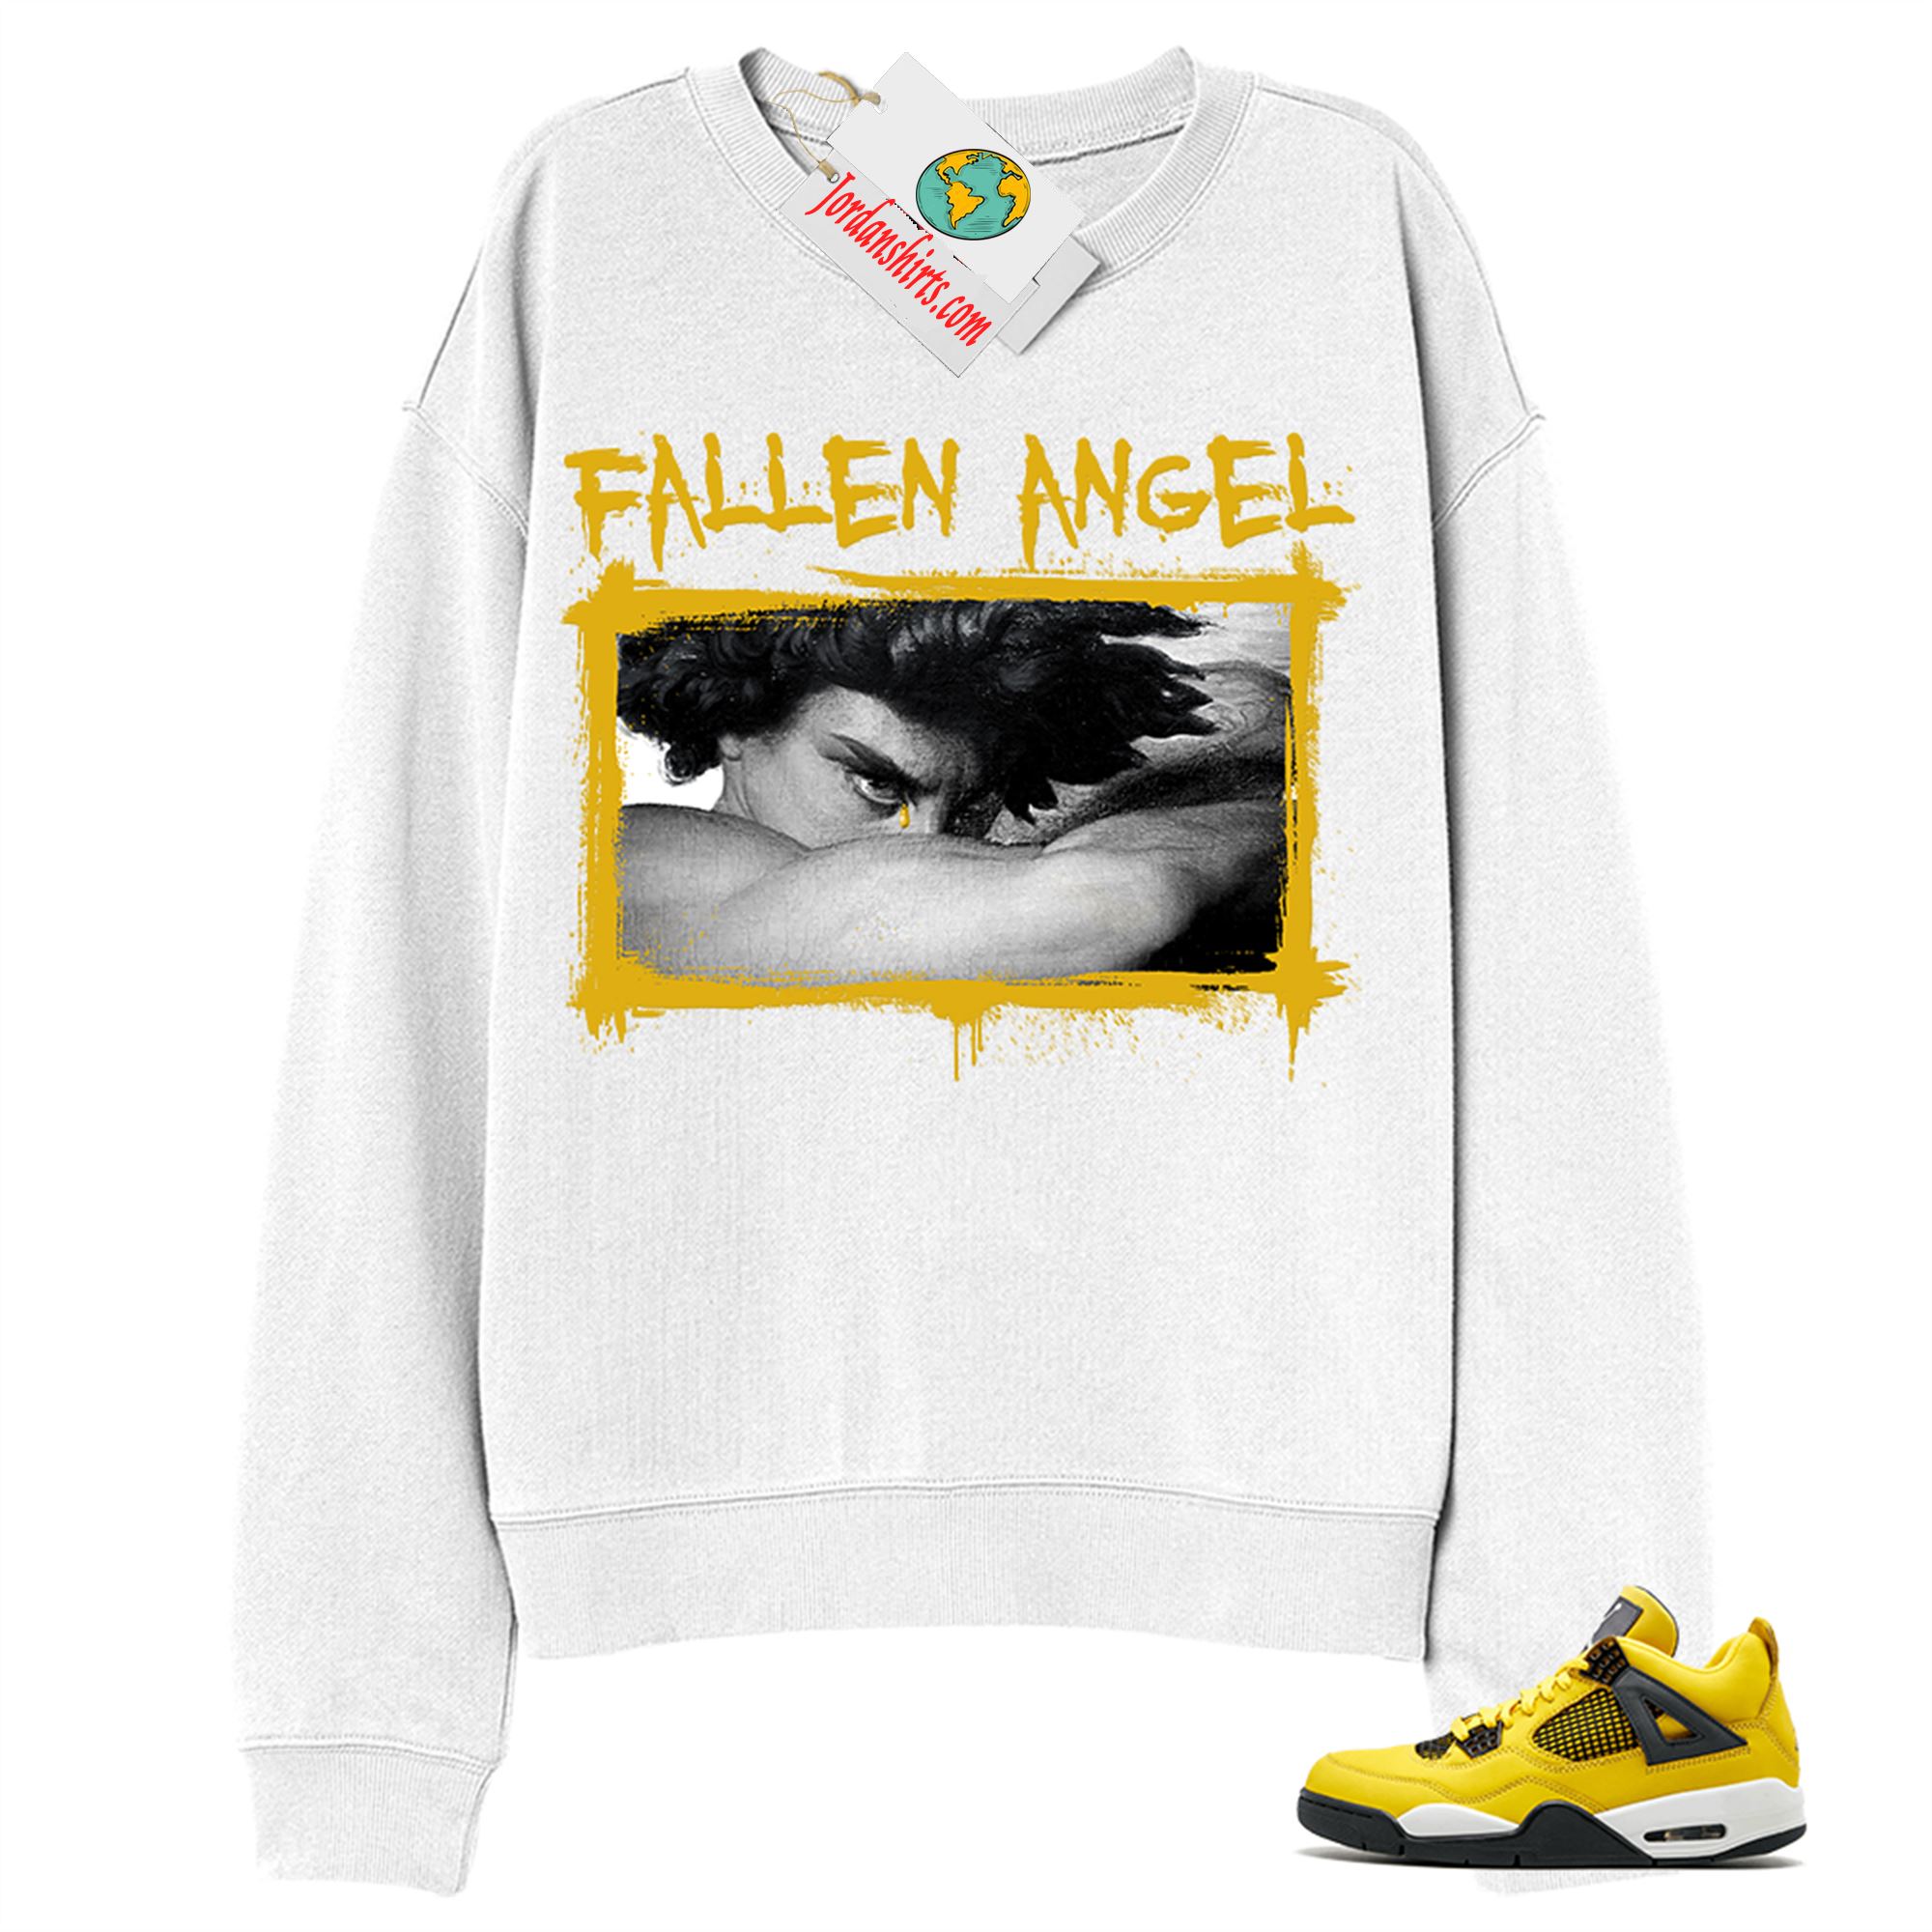 Jordan 4 Sweatshirt, Fallen Angel White Sweatshirt Air Jordan 4 Tour Yellow Lightning 4s Size Up To 5xl